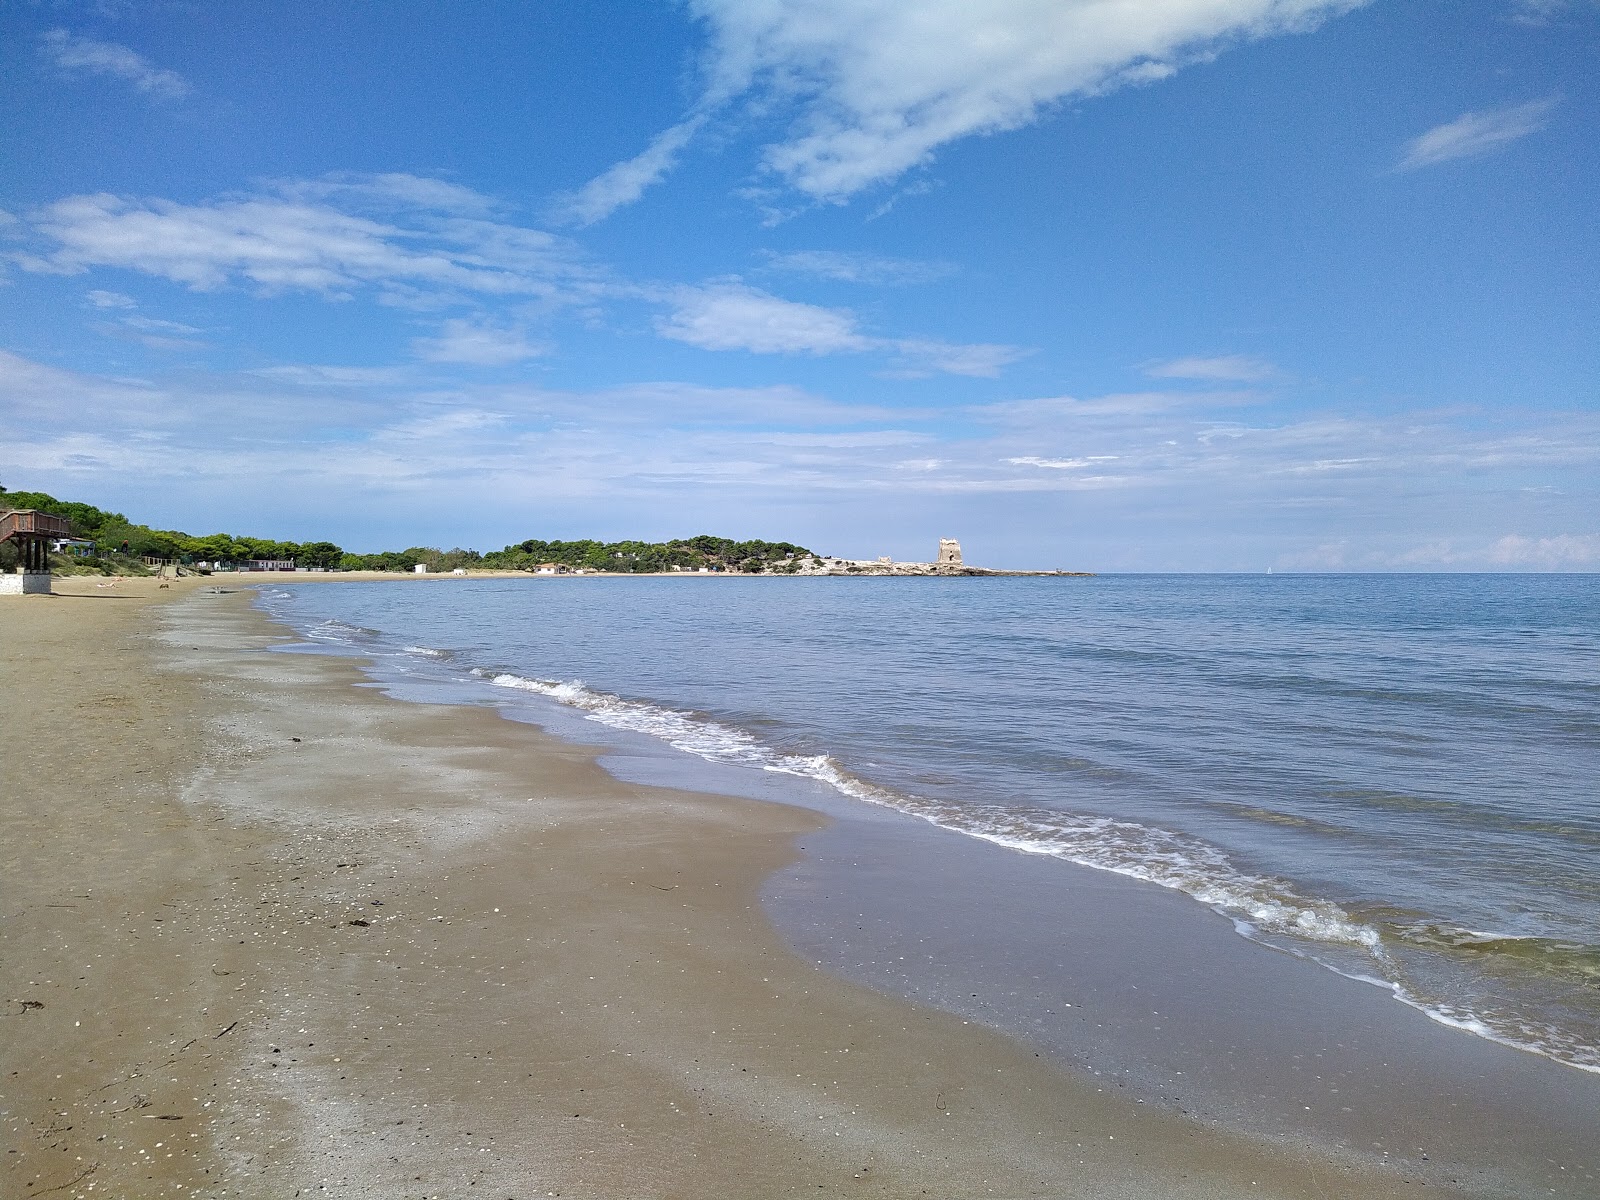 Spiaggia di Sfinale'in fotoğrafı - rahatlamayı sevenler arasında popüler bir yer